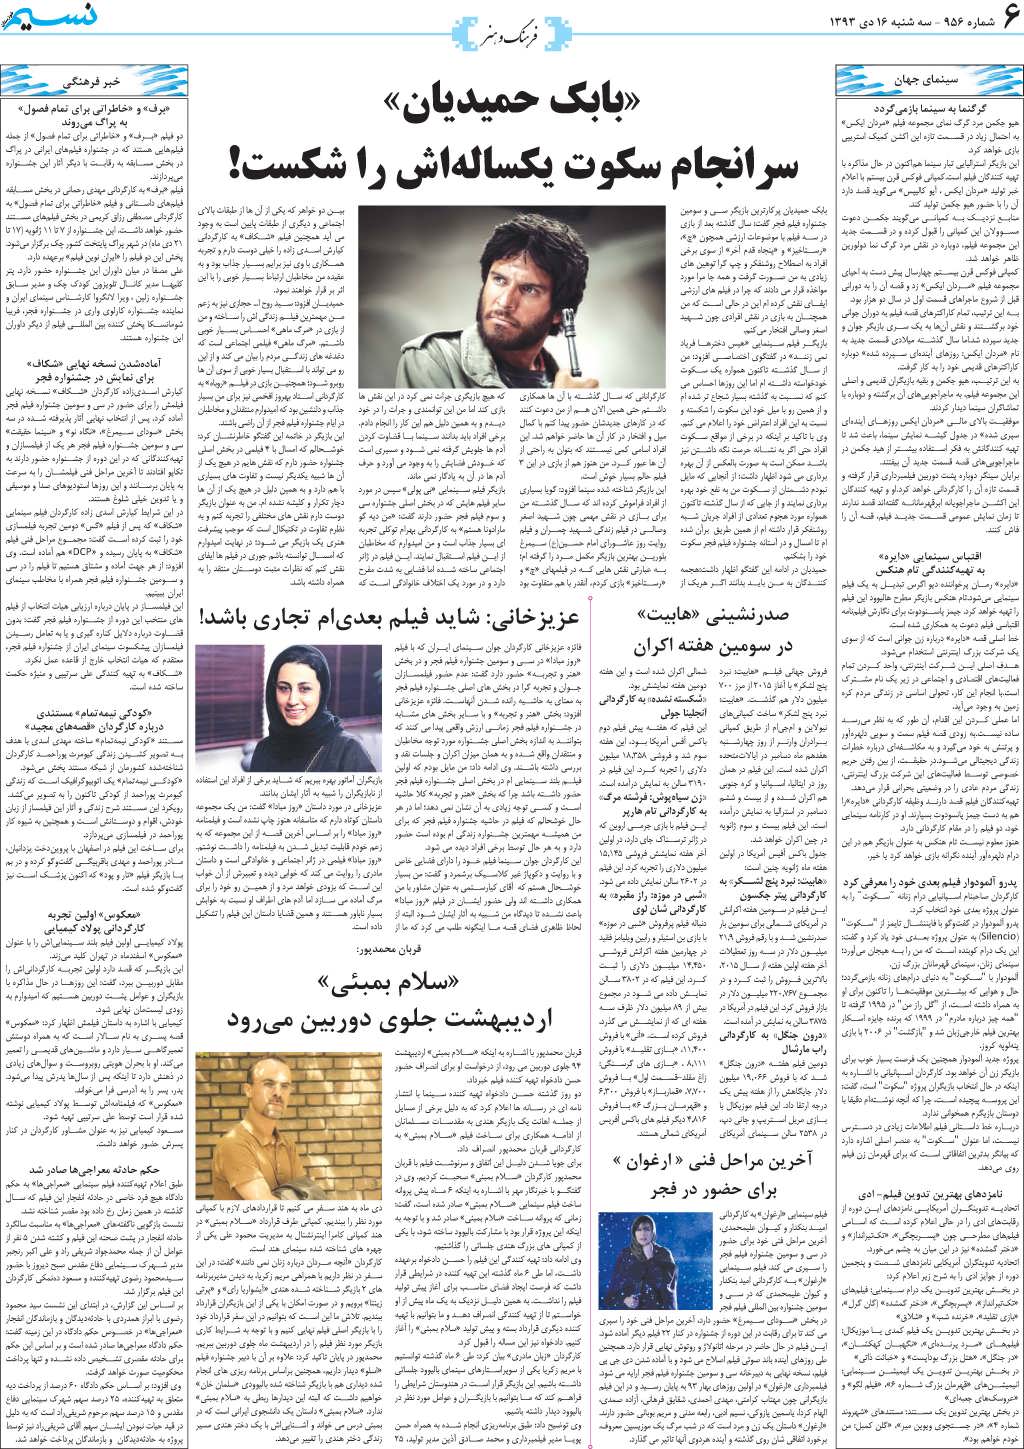 صفحه فرهنگ و هنر روزنامه نسیم شماره 956